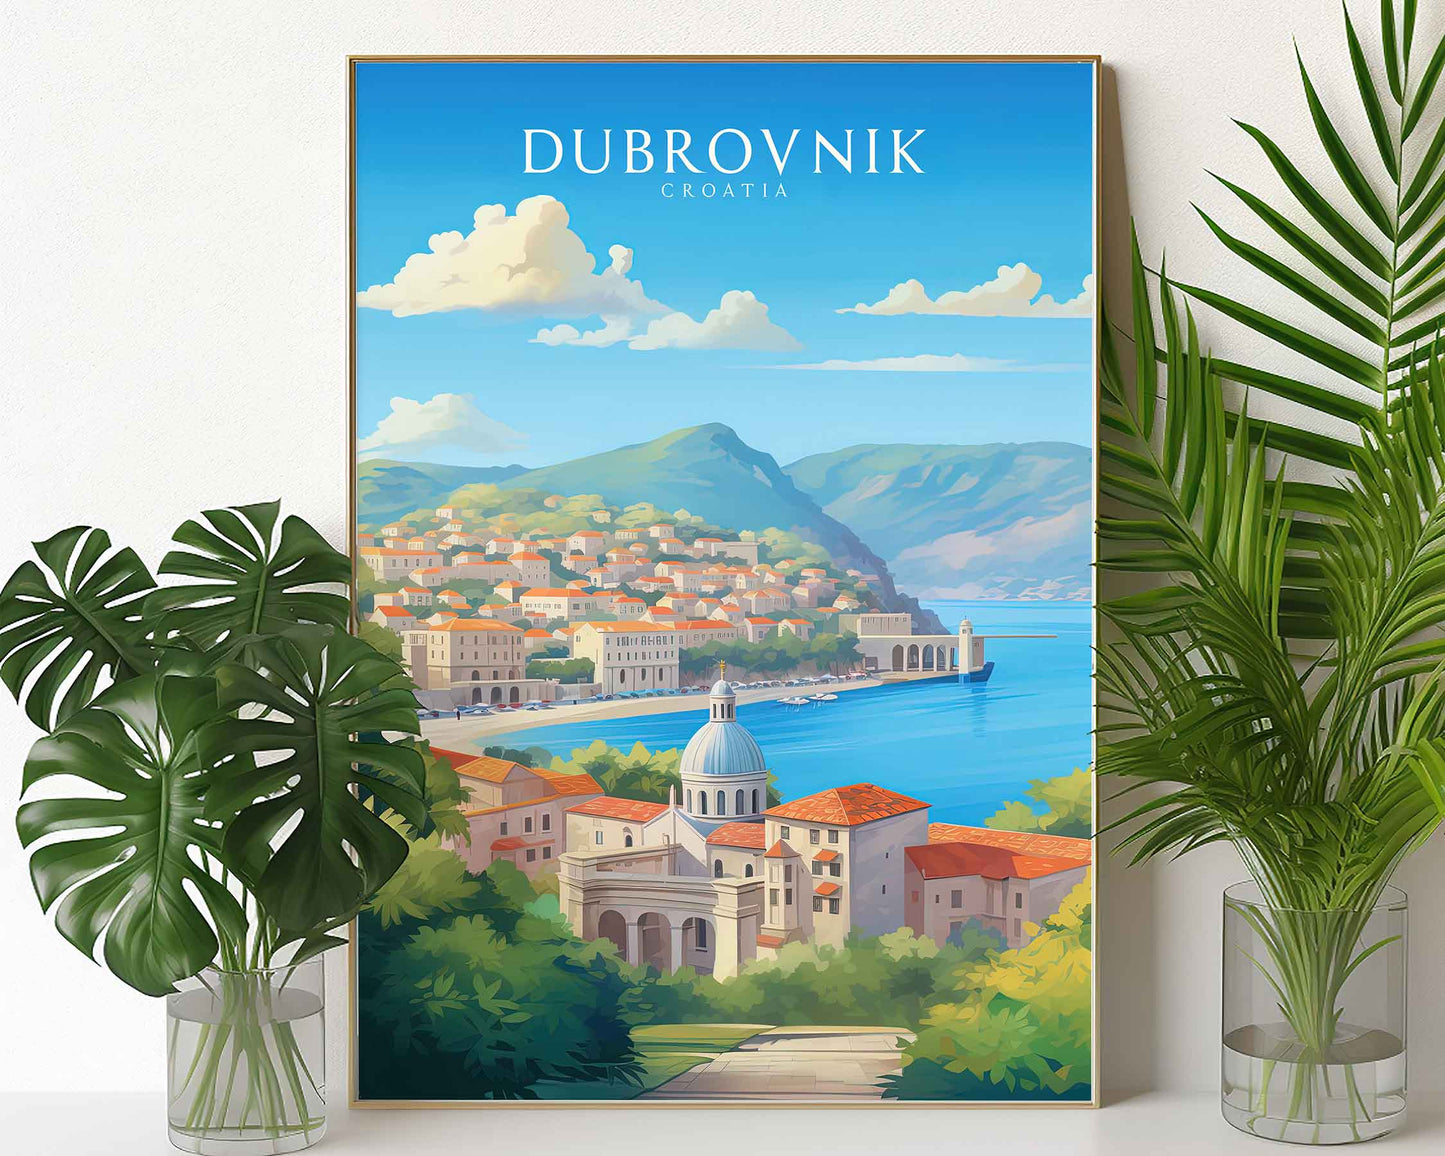 Framed Image of Dubrovnik Croatia Travel Poster Prints Wall Art Illustration